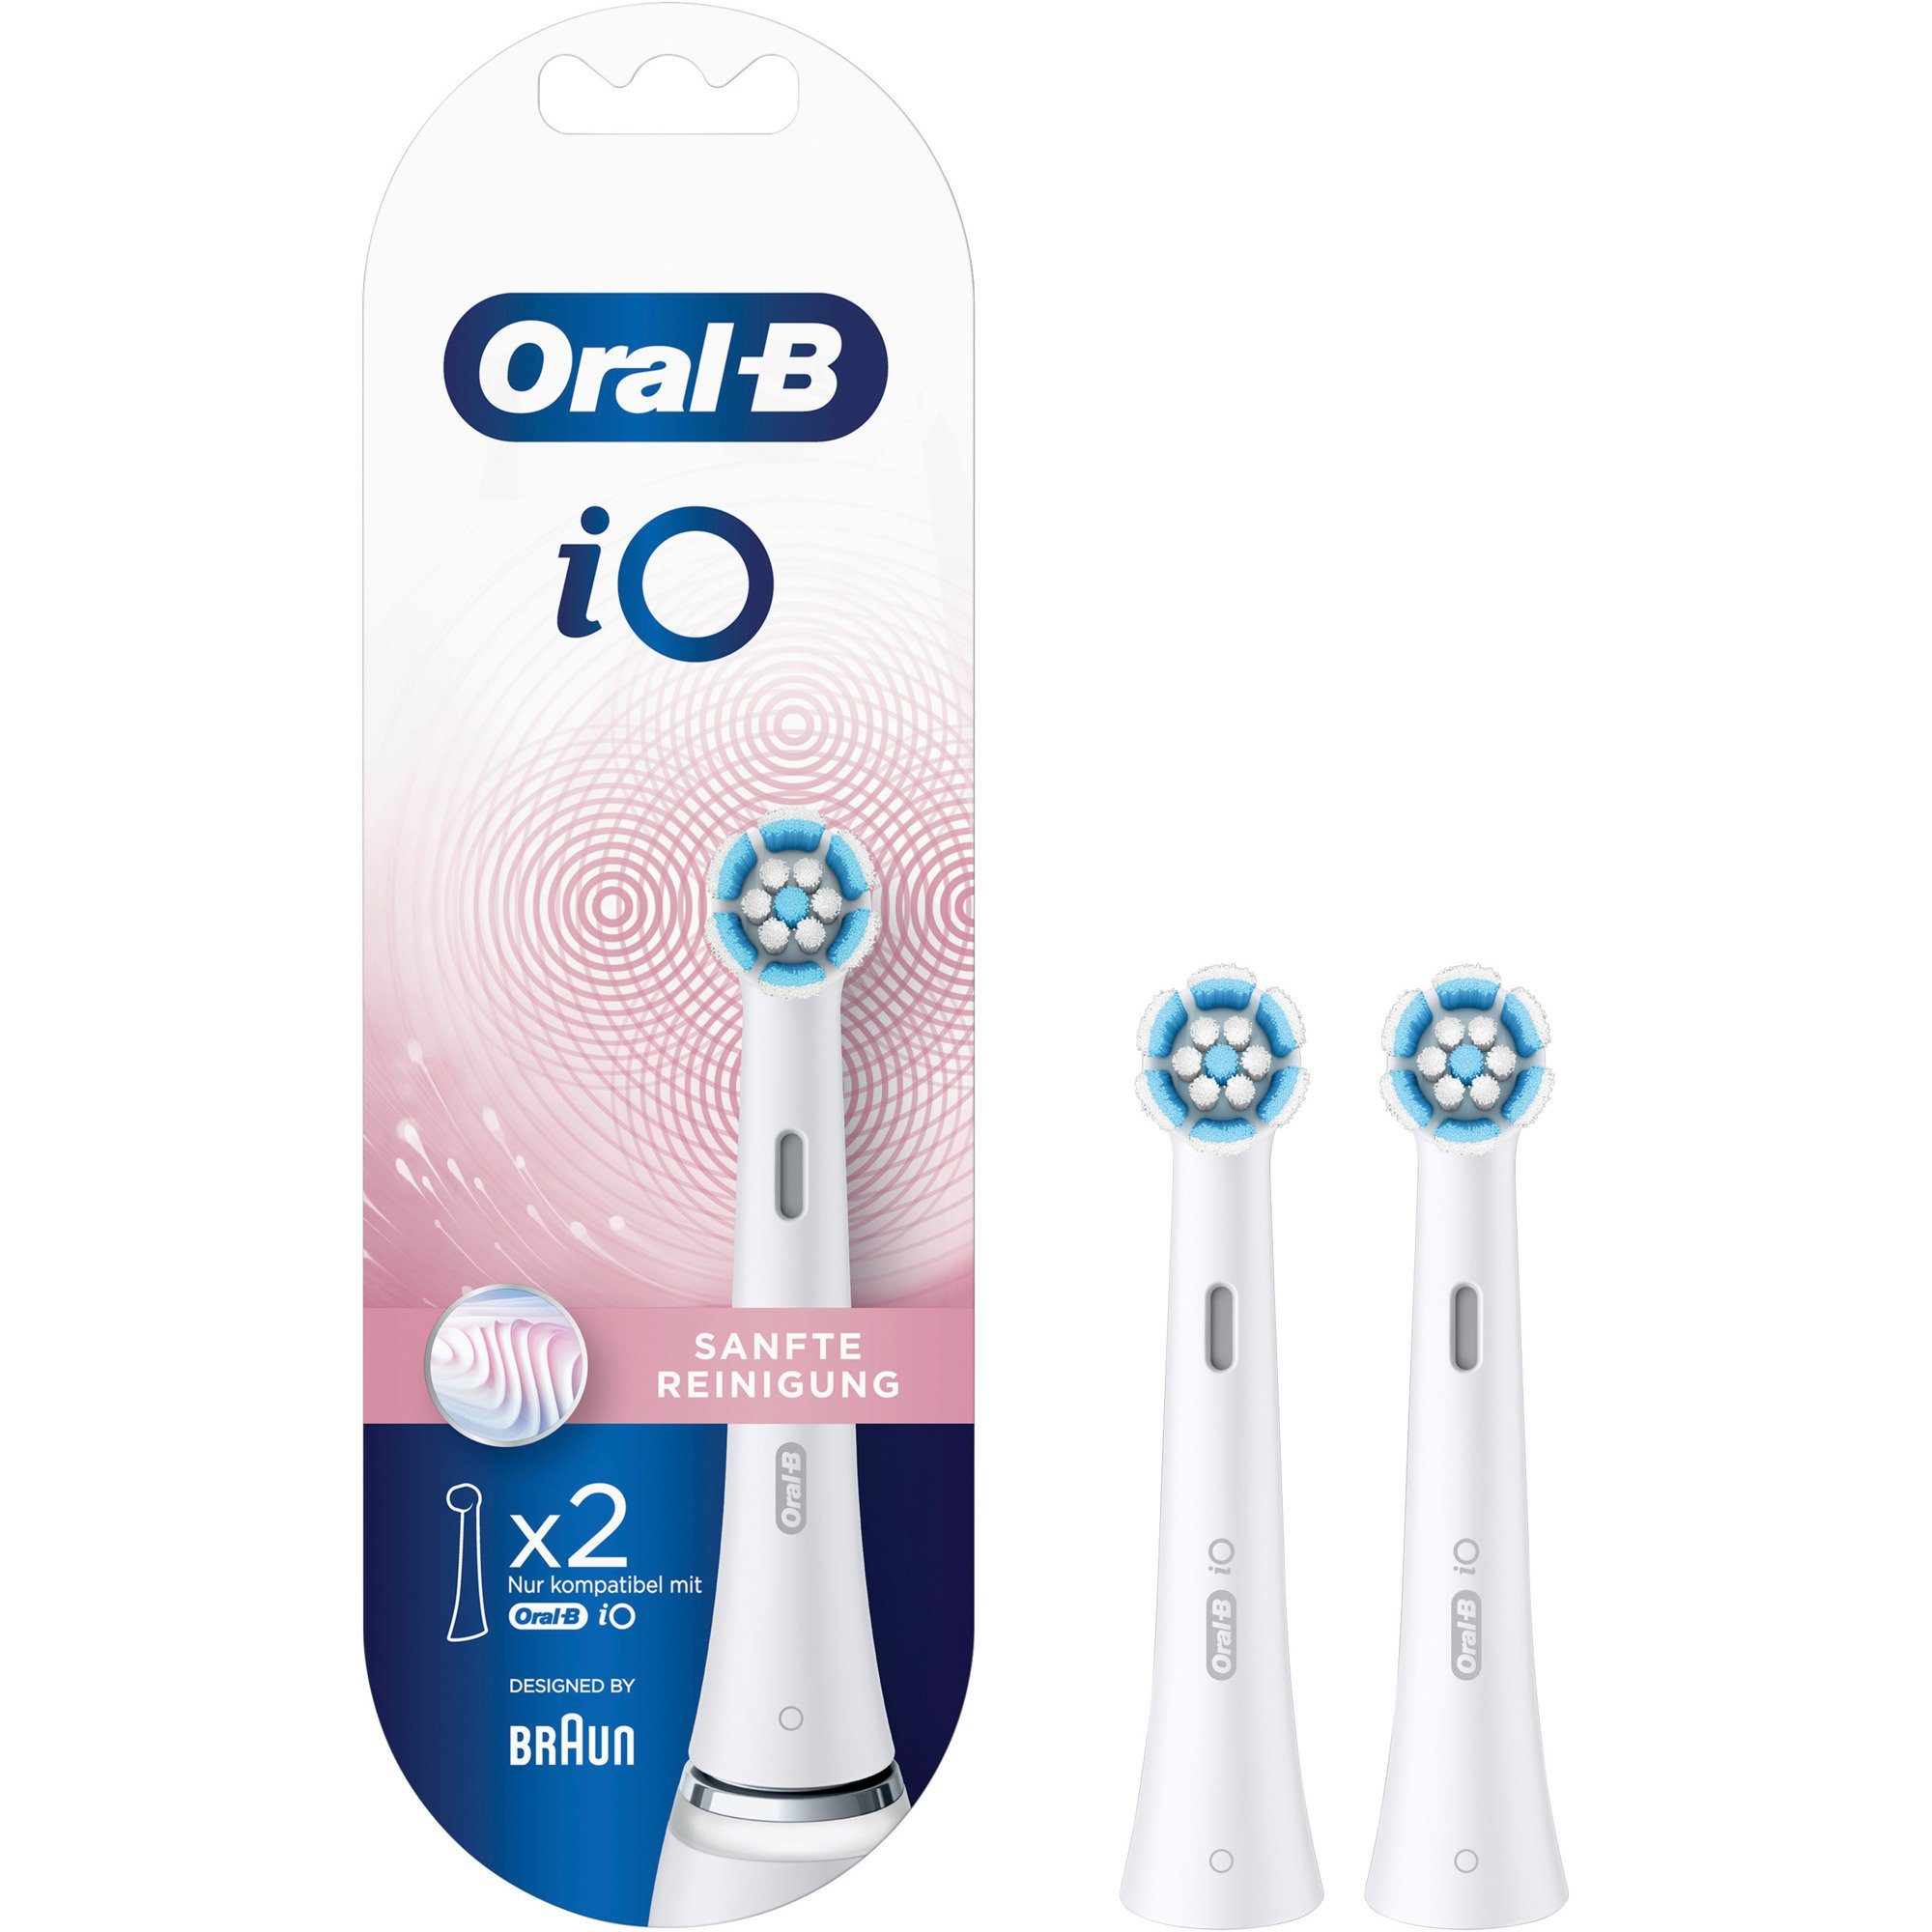 Oral-B Reinigung iO Braun Elektrische 2er Sanfte Zahnbürste Oral-B